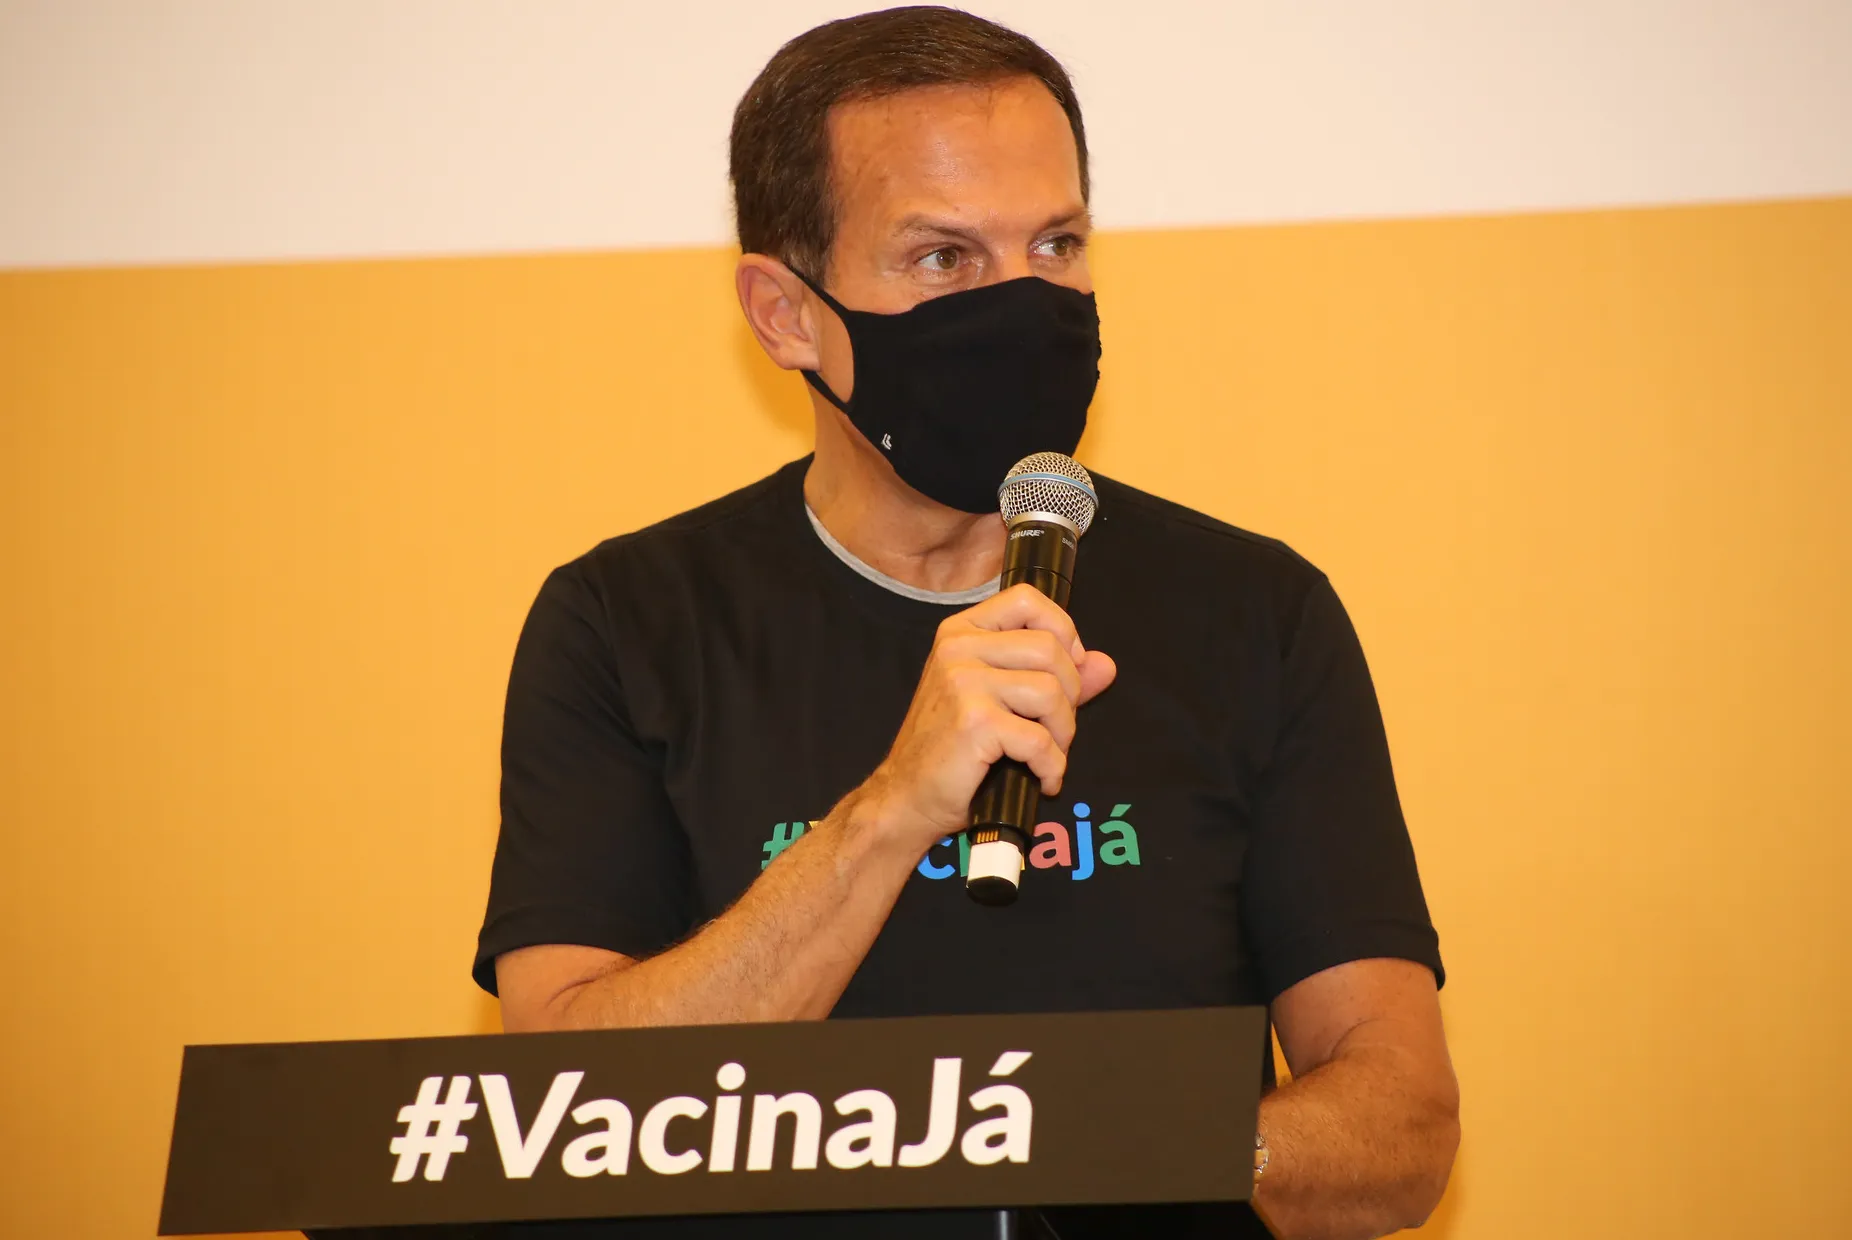 Doria fez elogios à agencia sanitária durante cerimônia de vacinação da primeira criança contra a covid-19 no Brasil